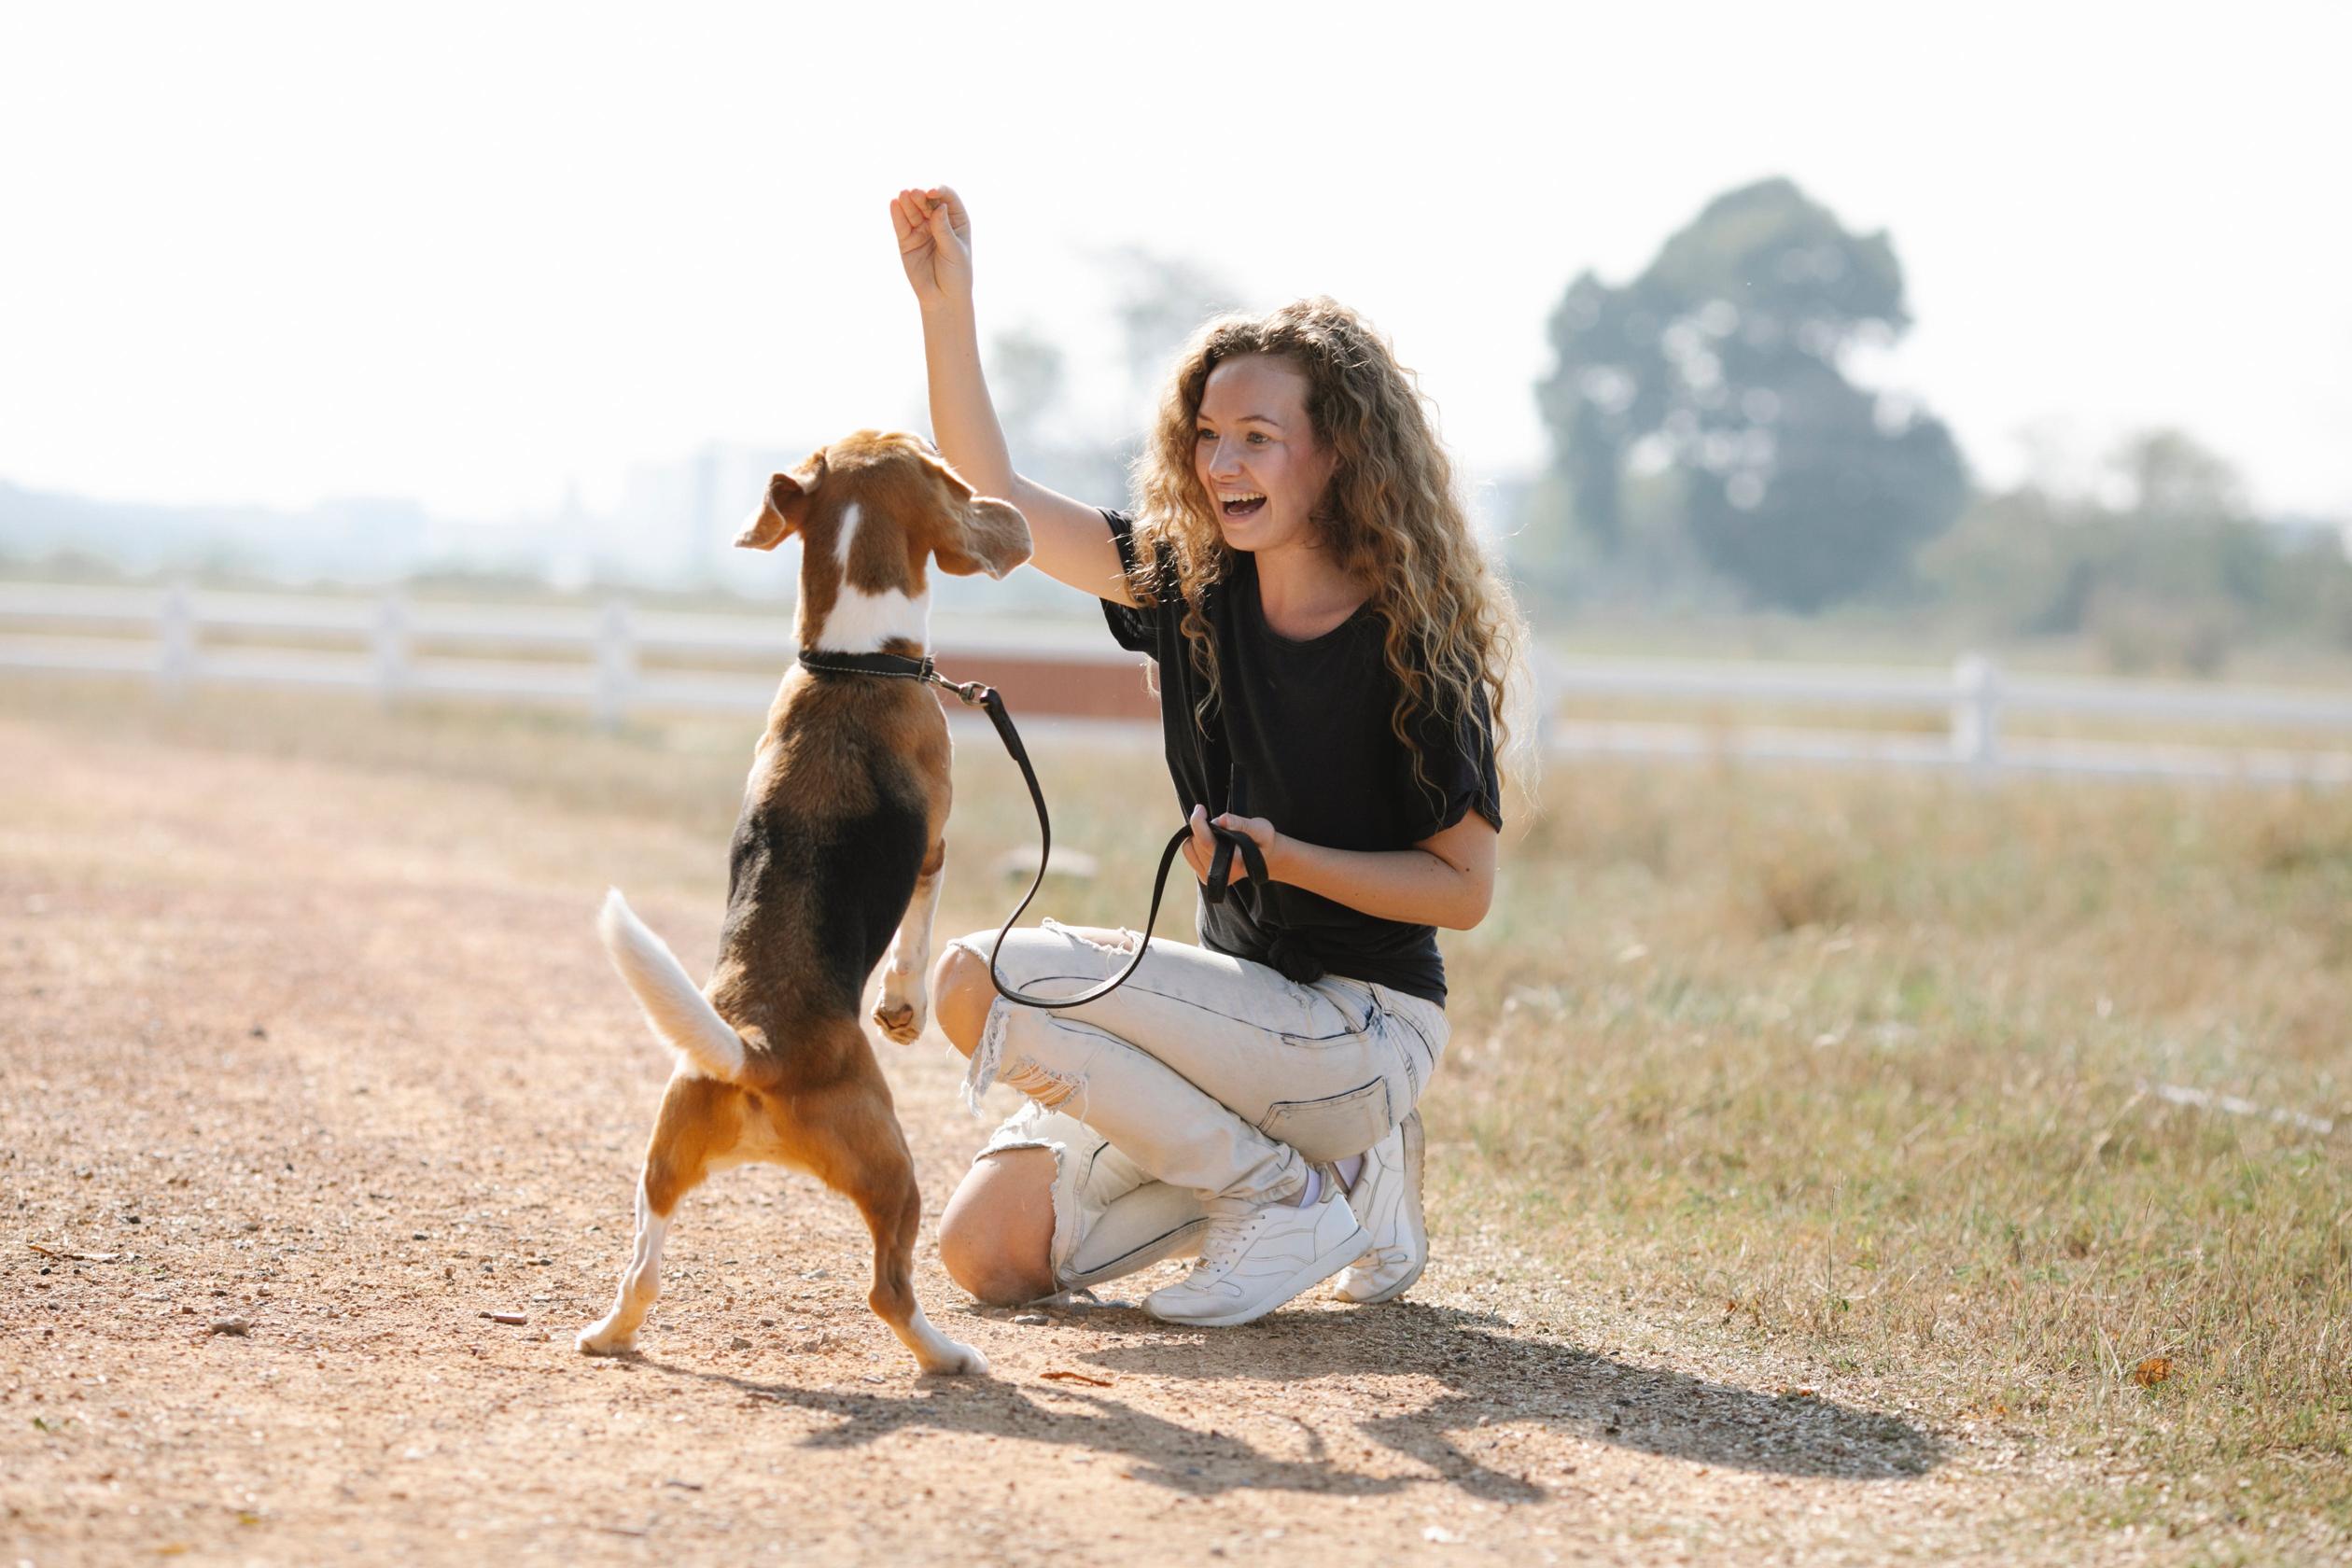 Szkolenie posłuszeństwa: jak skutecznie nauczyć psa podstawowych komend